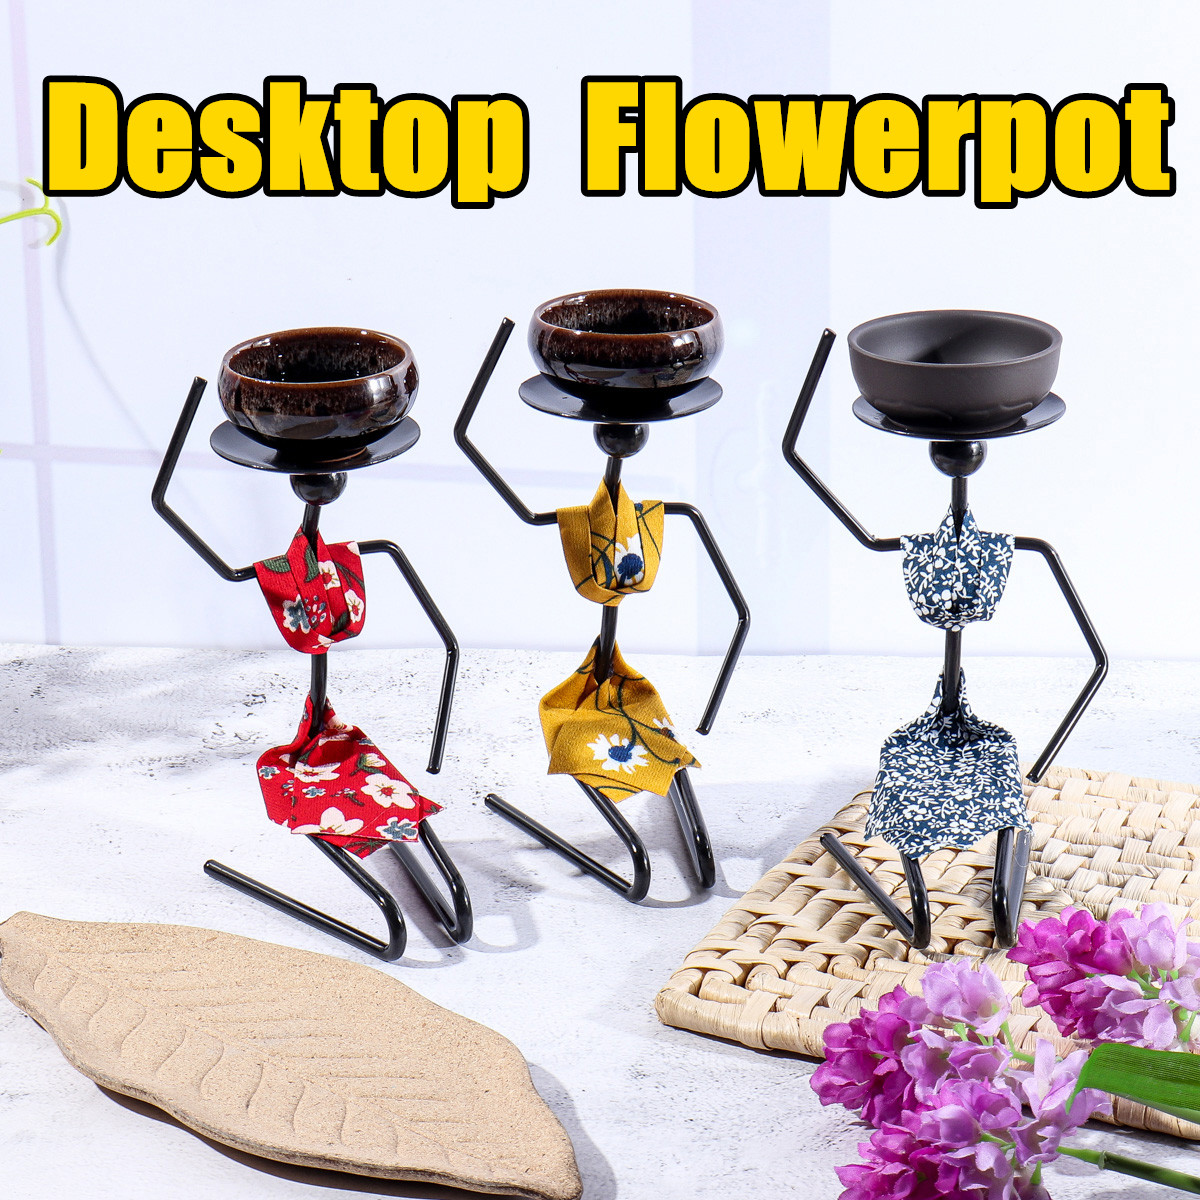 Desktop-Flower-Pot-Succulent-Container-Fleshy-Small-Pots-Rack-Home-Office-Decoration-1728922-1